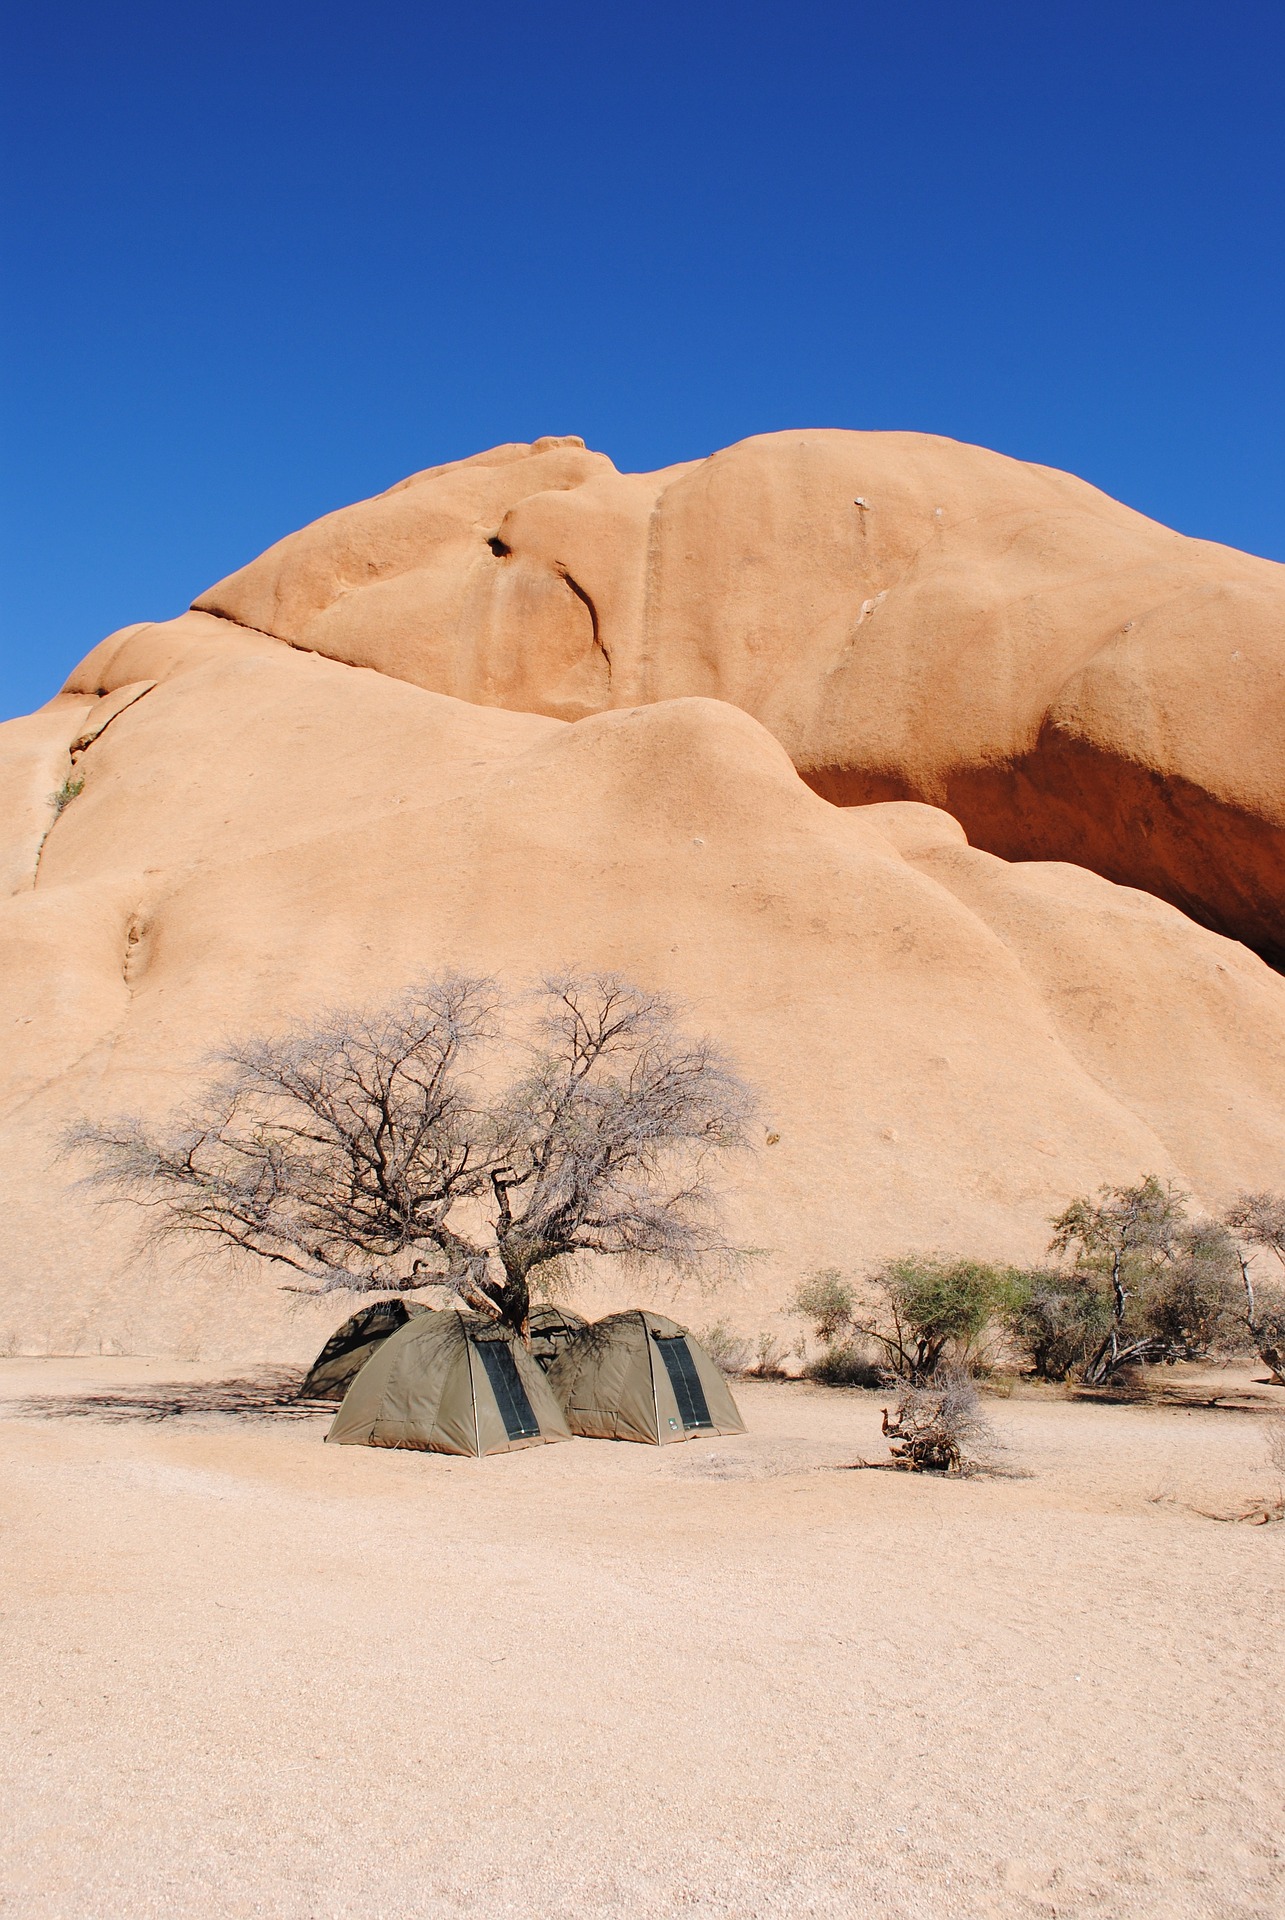 namibia desert camping spots التخييم في الصحراء